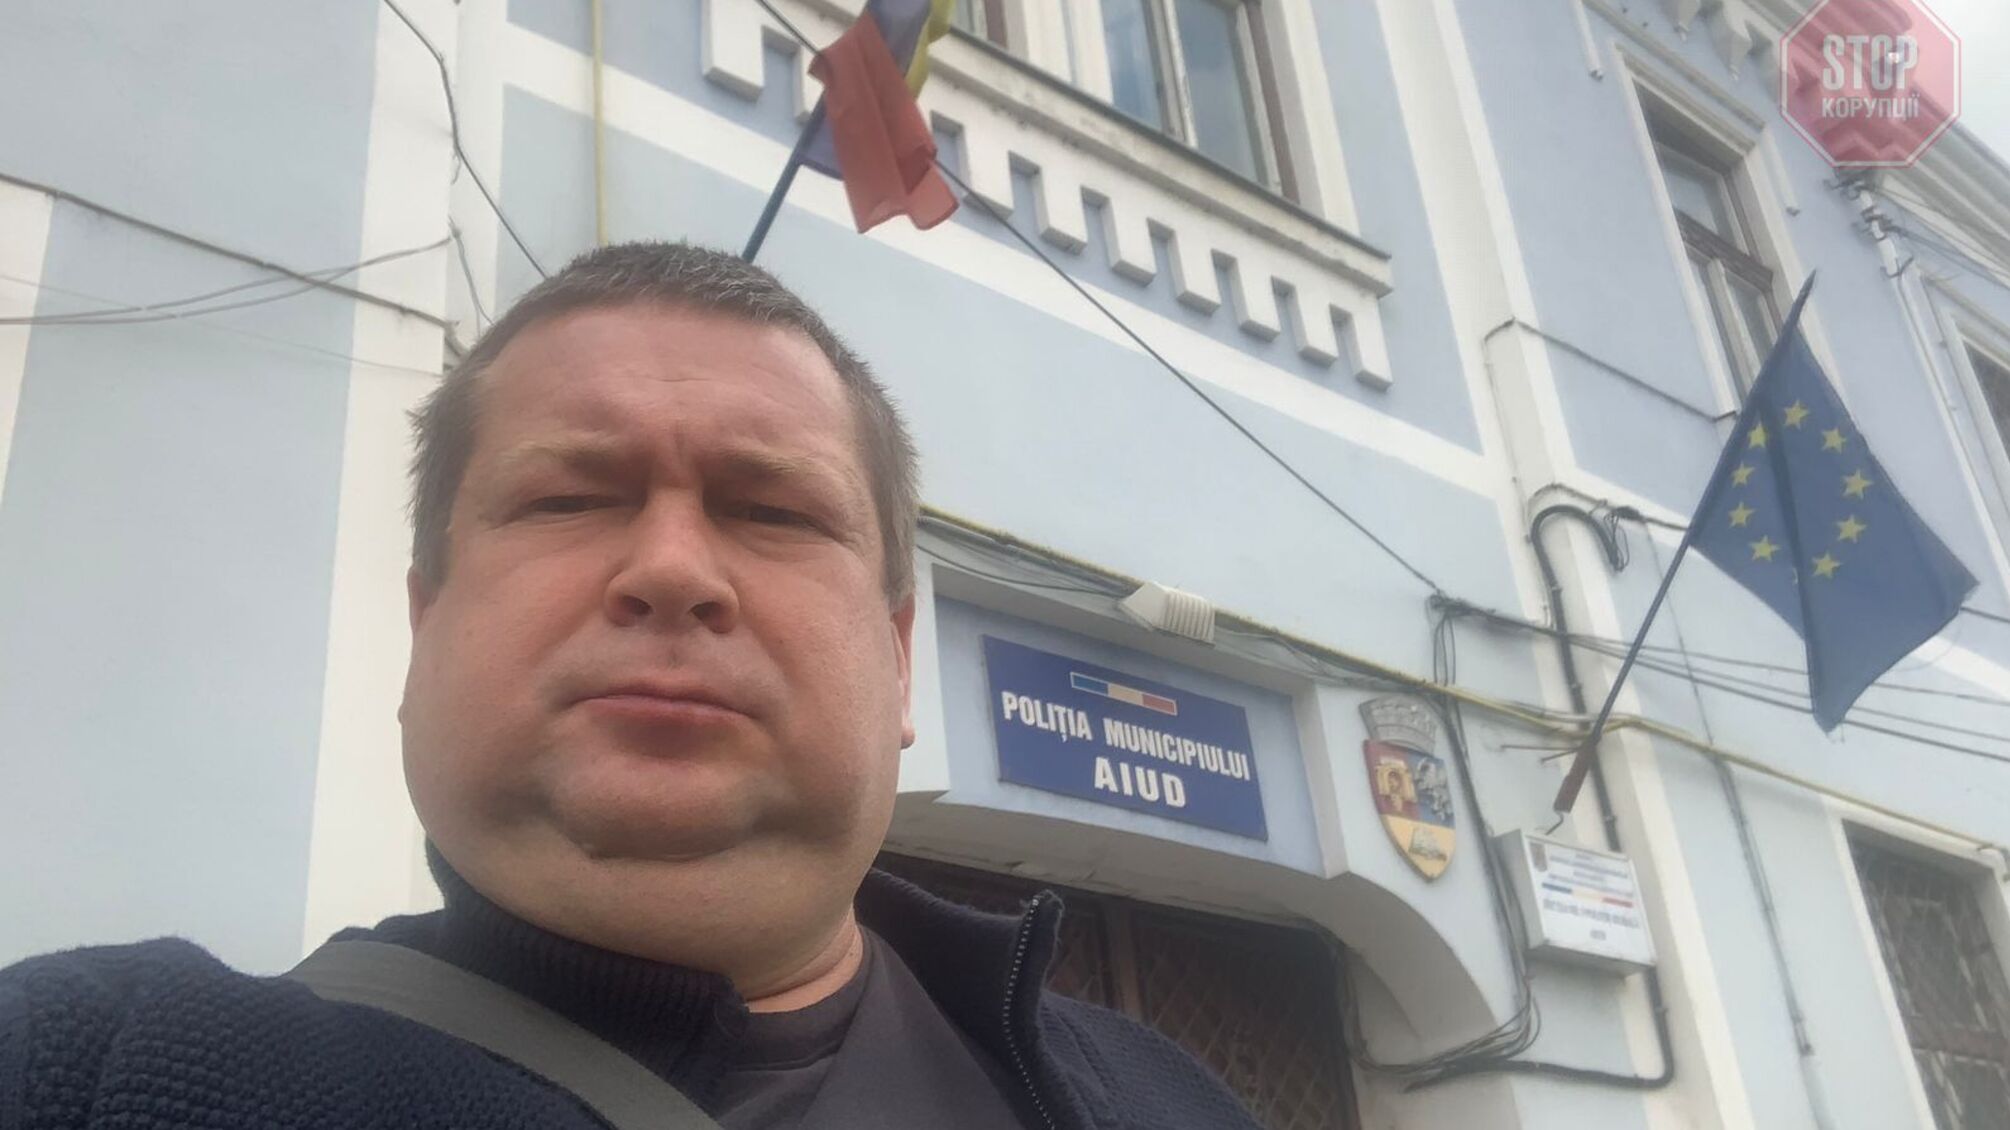 Міжнародна боротьба з українською корупцією: львівський активіст завітав до поліції в Європі